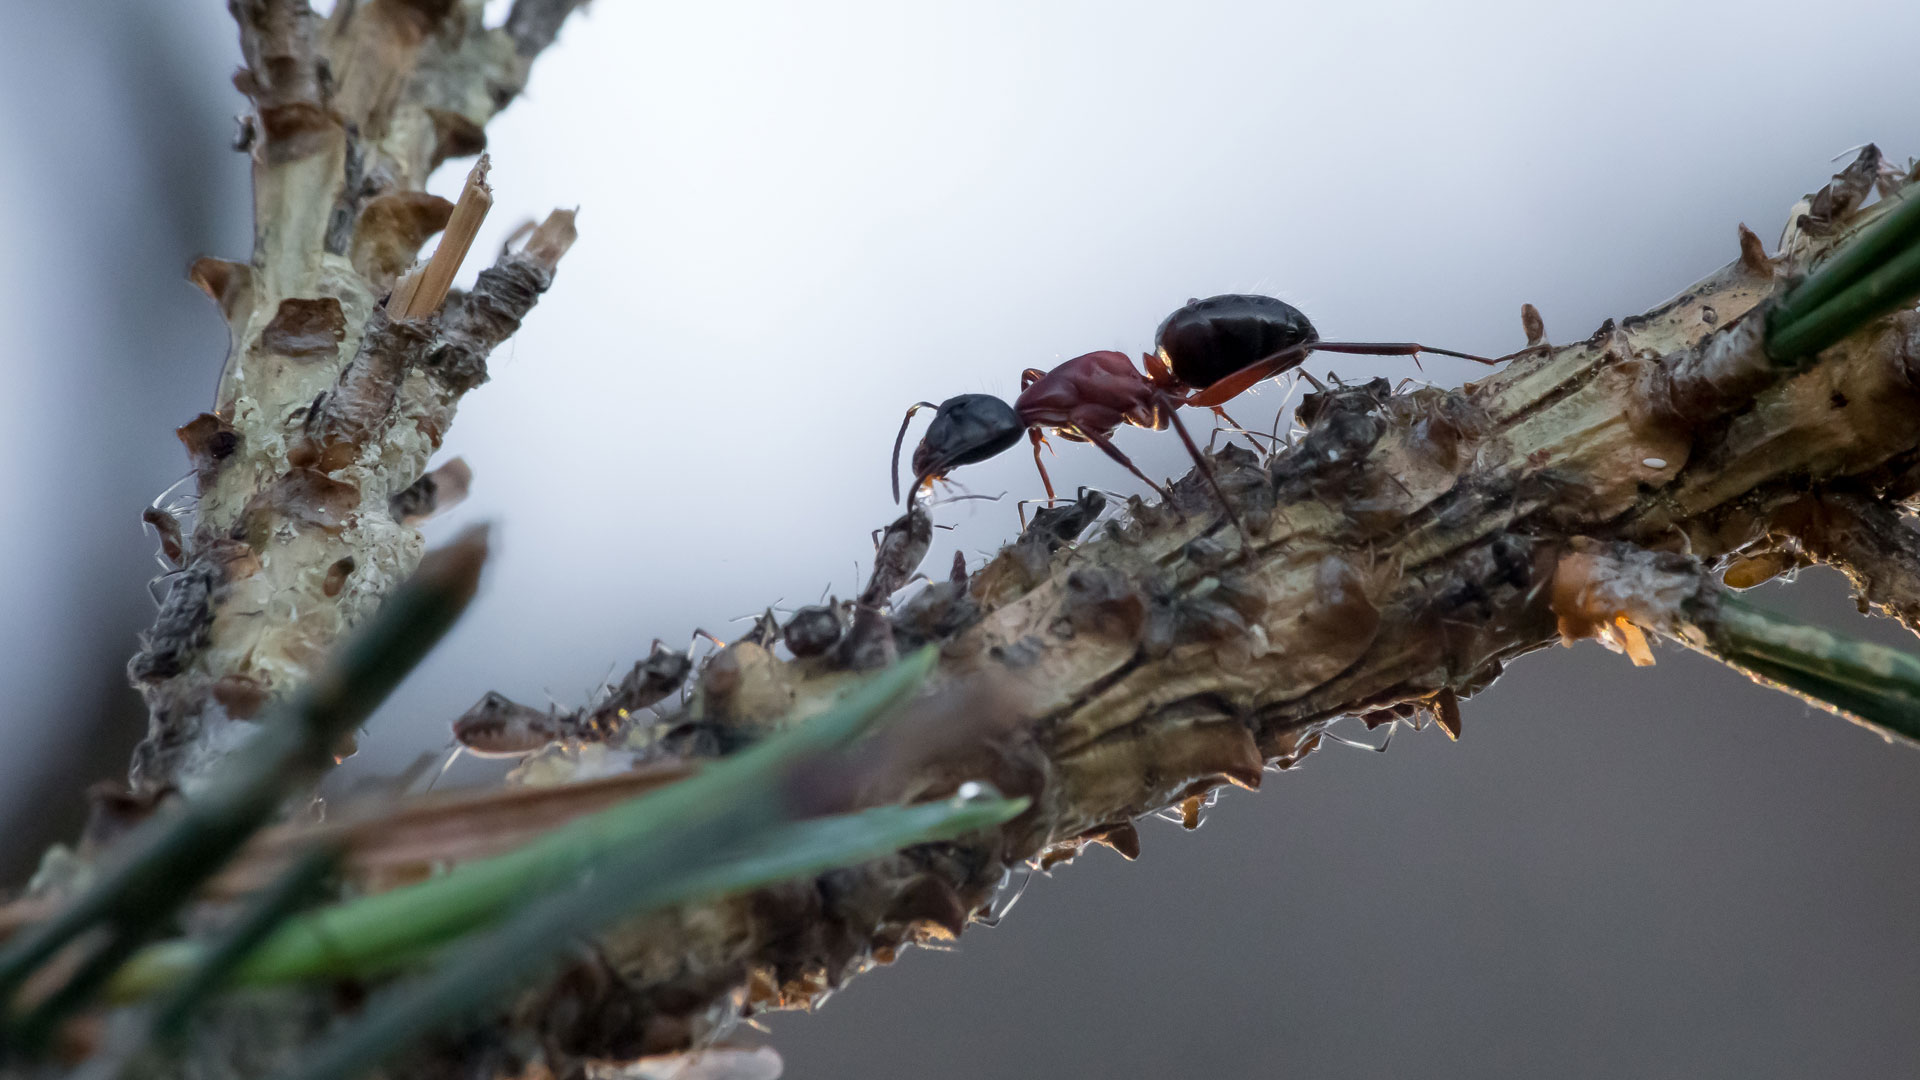 La fourmi parasitée il y a environ 50 millions d'années, semble être une fourmi du genre Camponotus, appelée aussi fourmi&nbsp;charpentière. © Hélène Rival,&nbsp;Wikimedia Commons, CC by-sa&nbsp;4.0